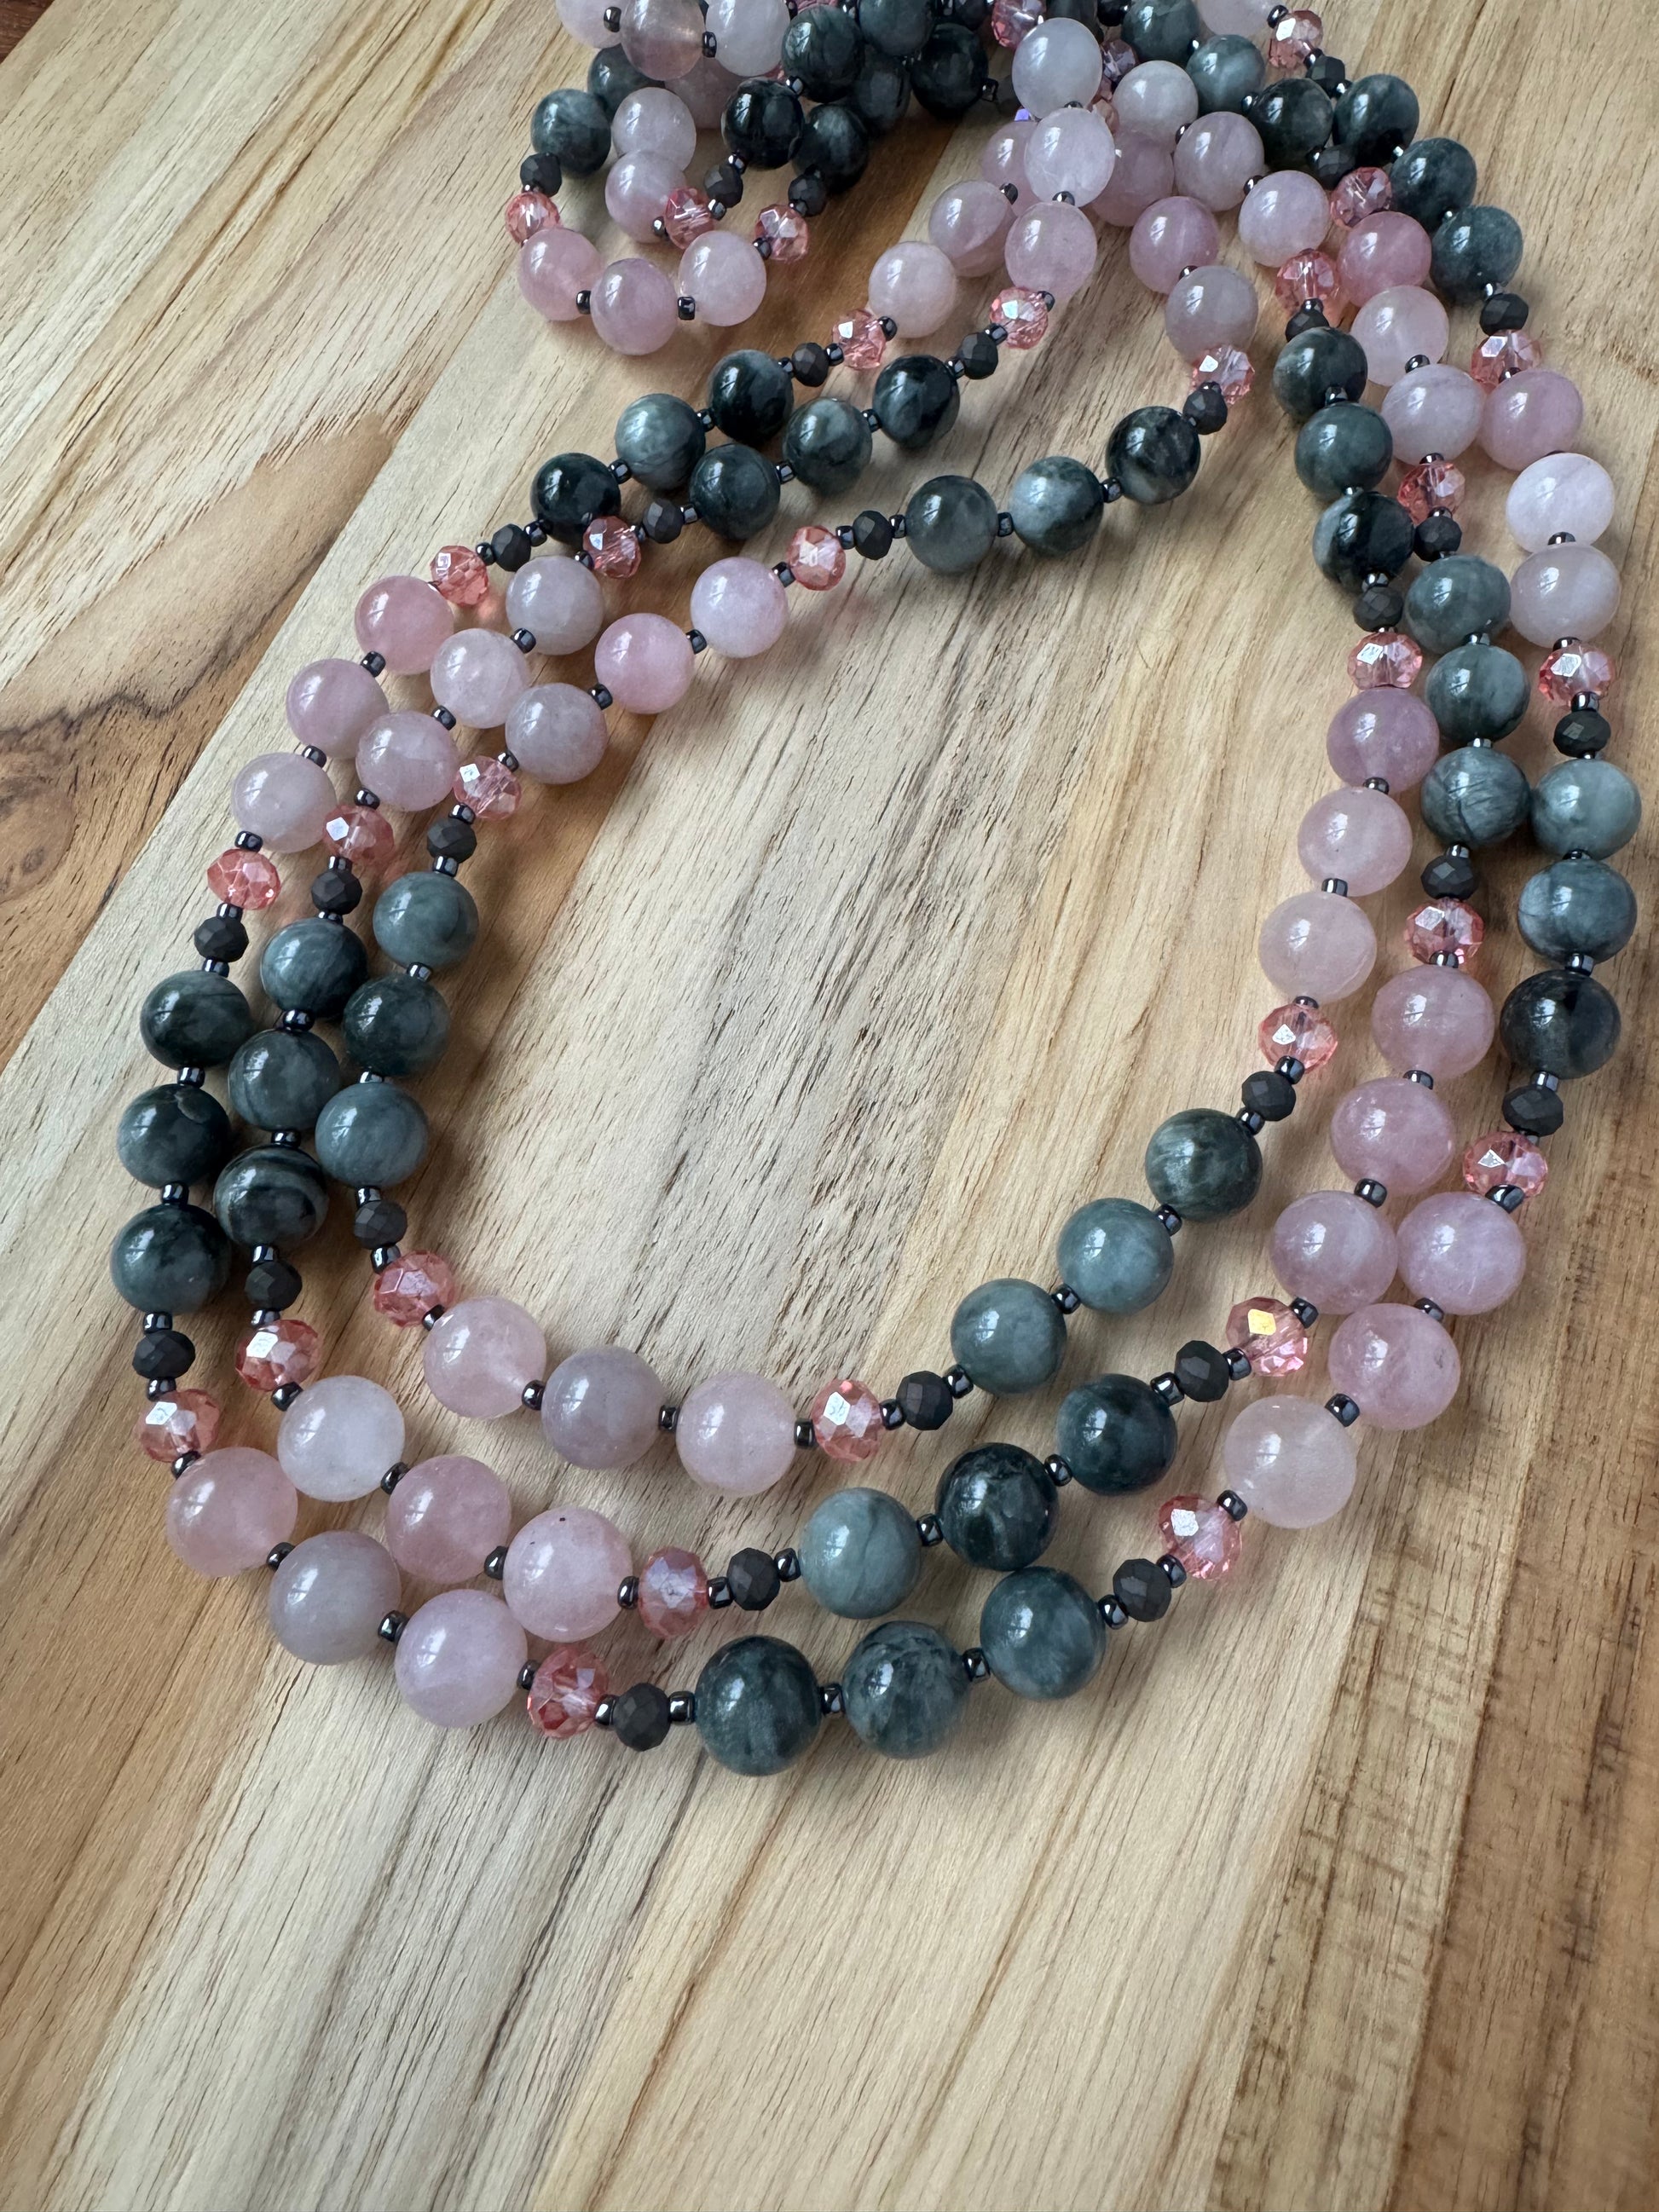 60" Extra long Wraparound Beaded Necklace with Eagle Eye Stone Madagascar Rose Quartz and Crystal Beads - My Urban Gems